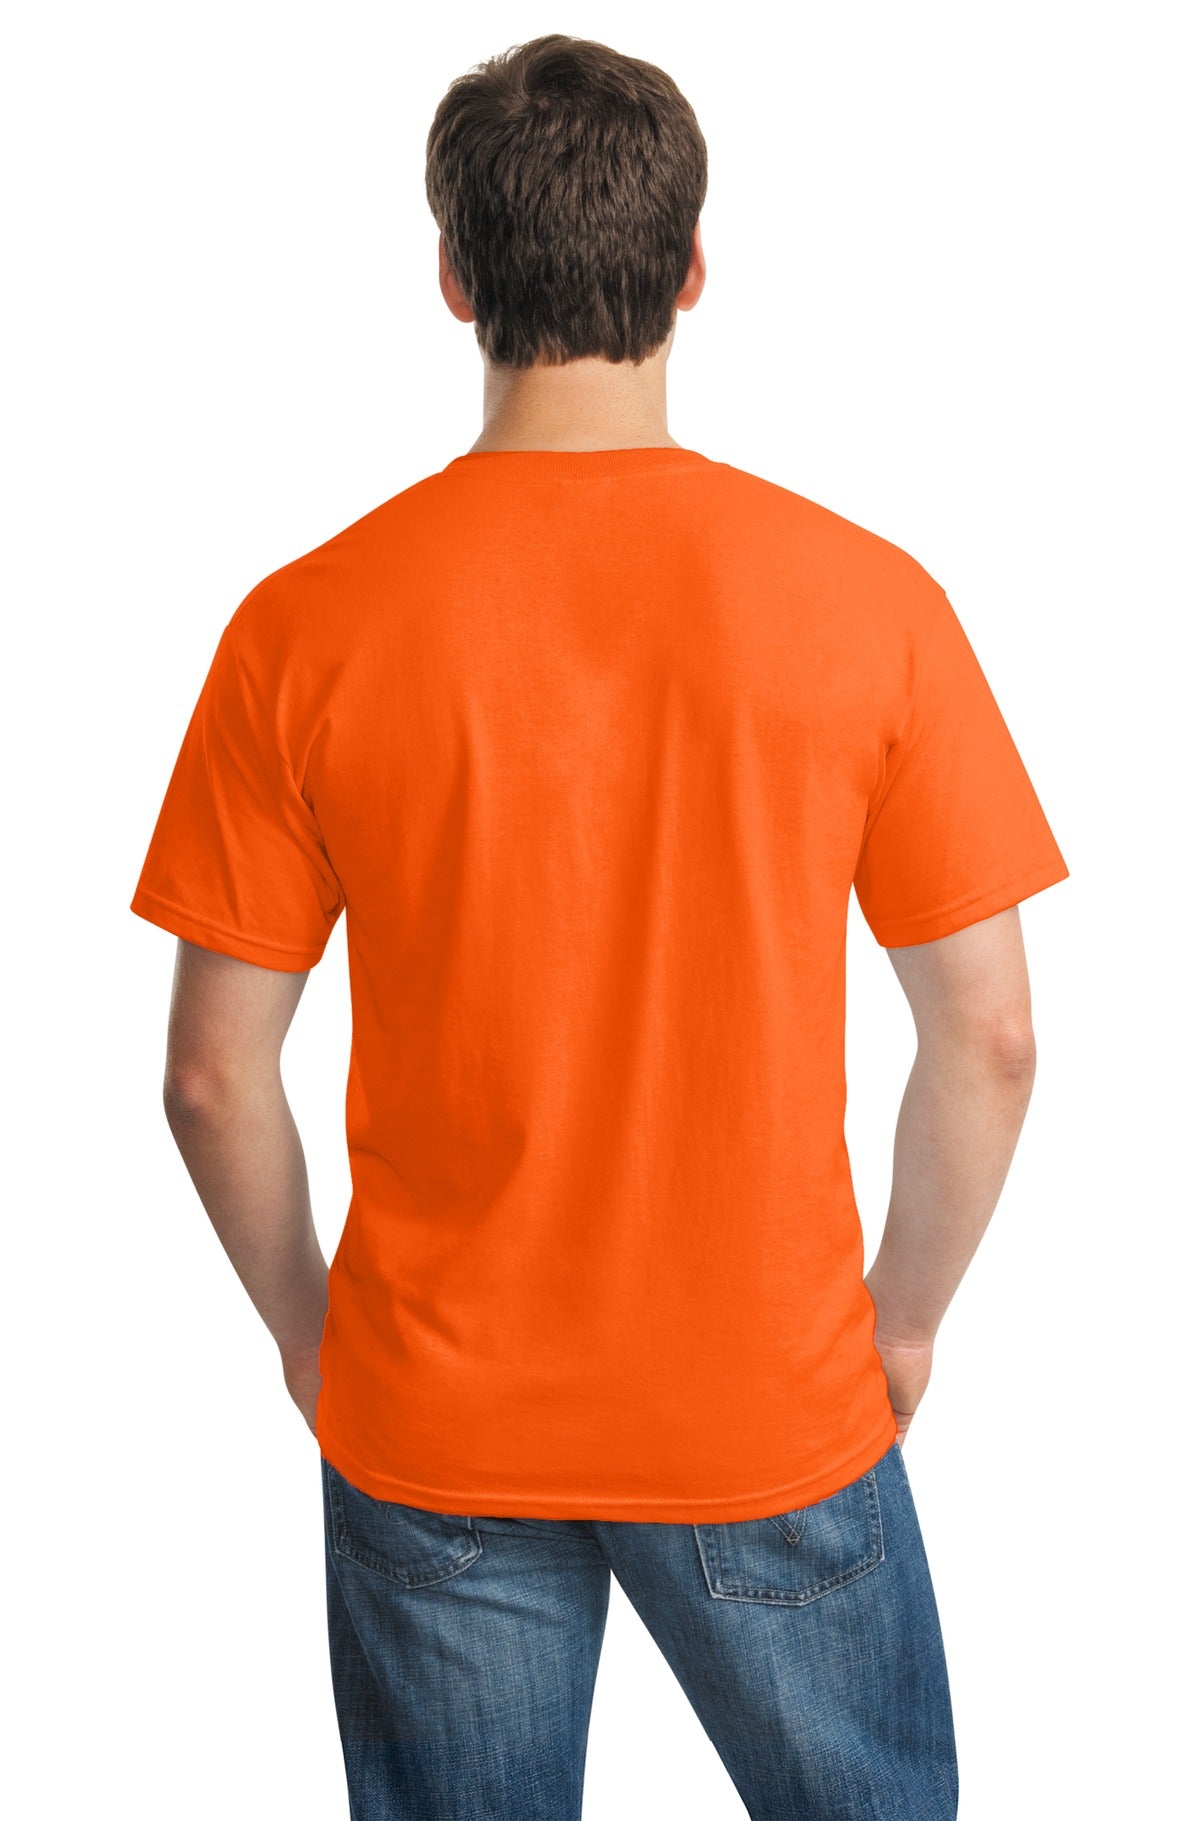 Gildan - Heavy Cotton 100% Cotton T-Shirt. 5000 - S. Orange